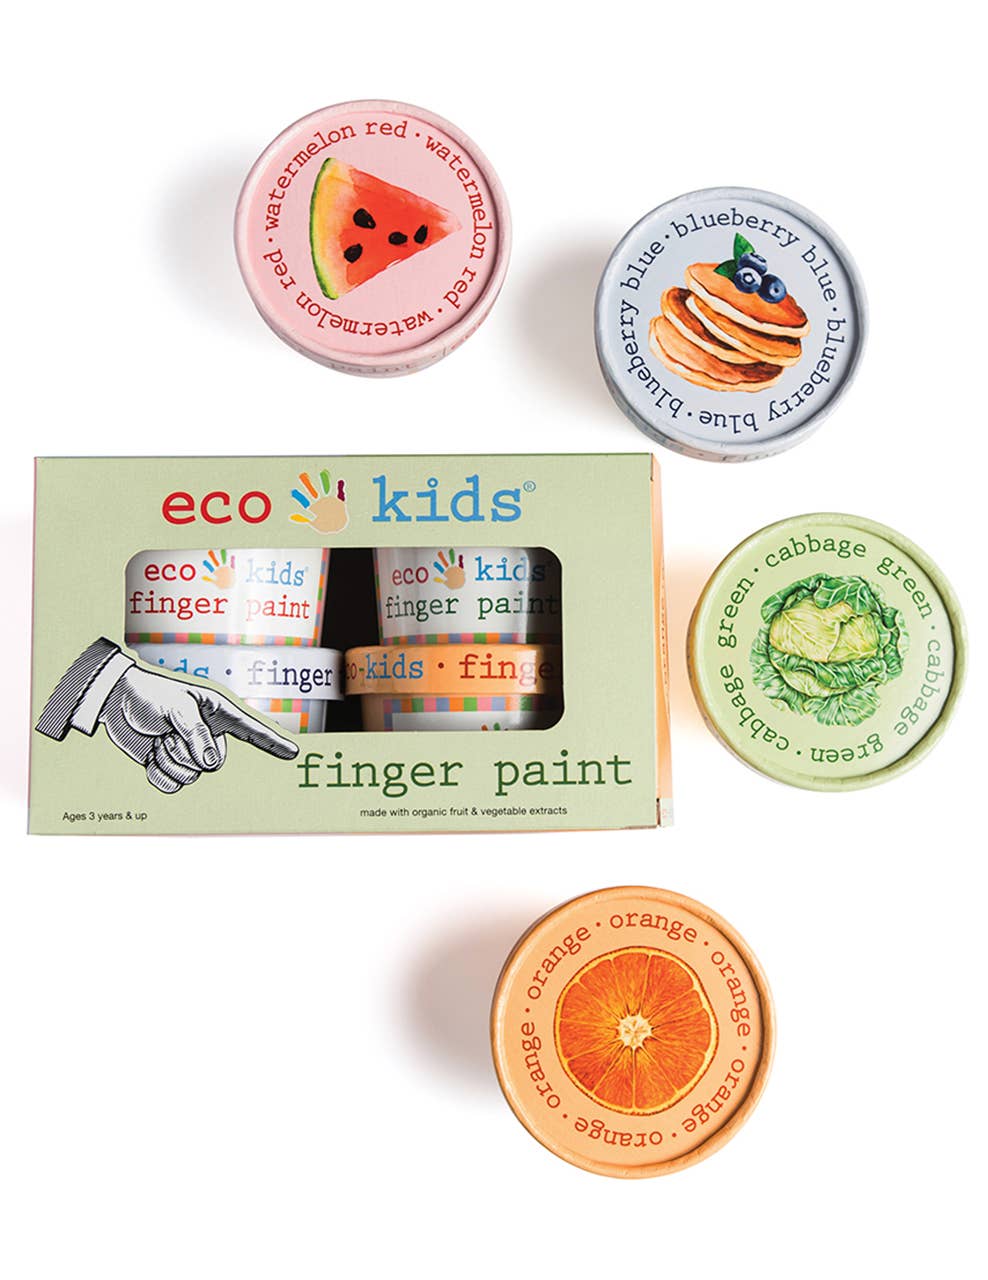 eco kids vegetable based finger paint